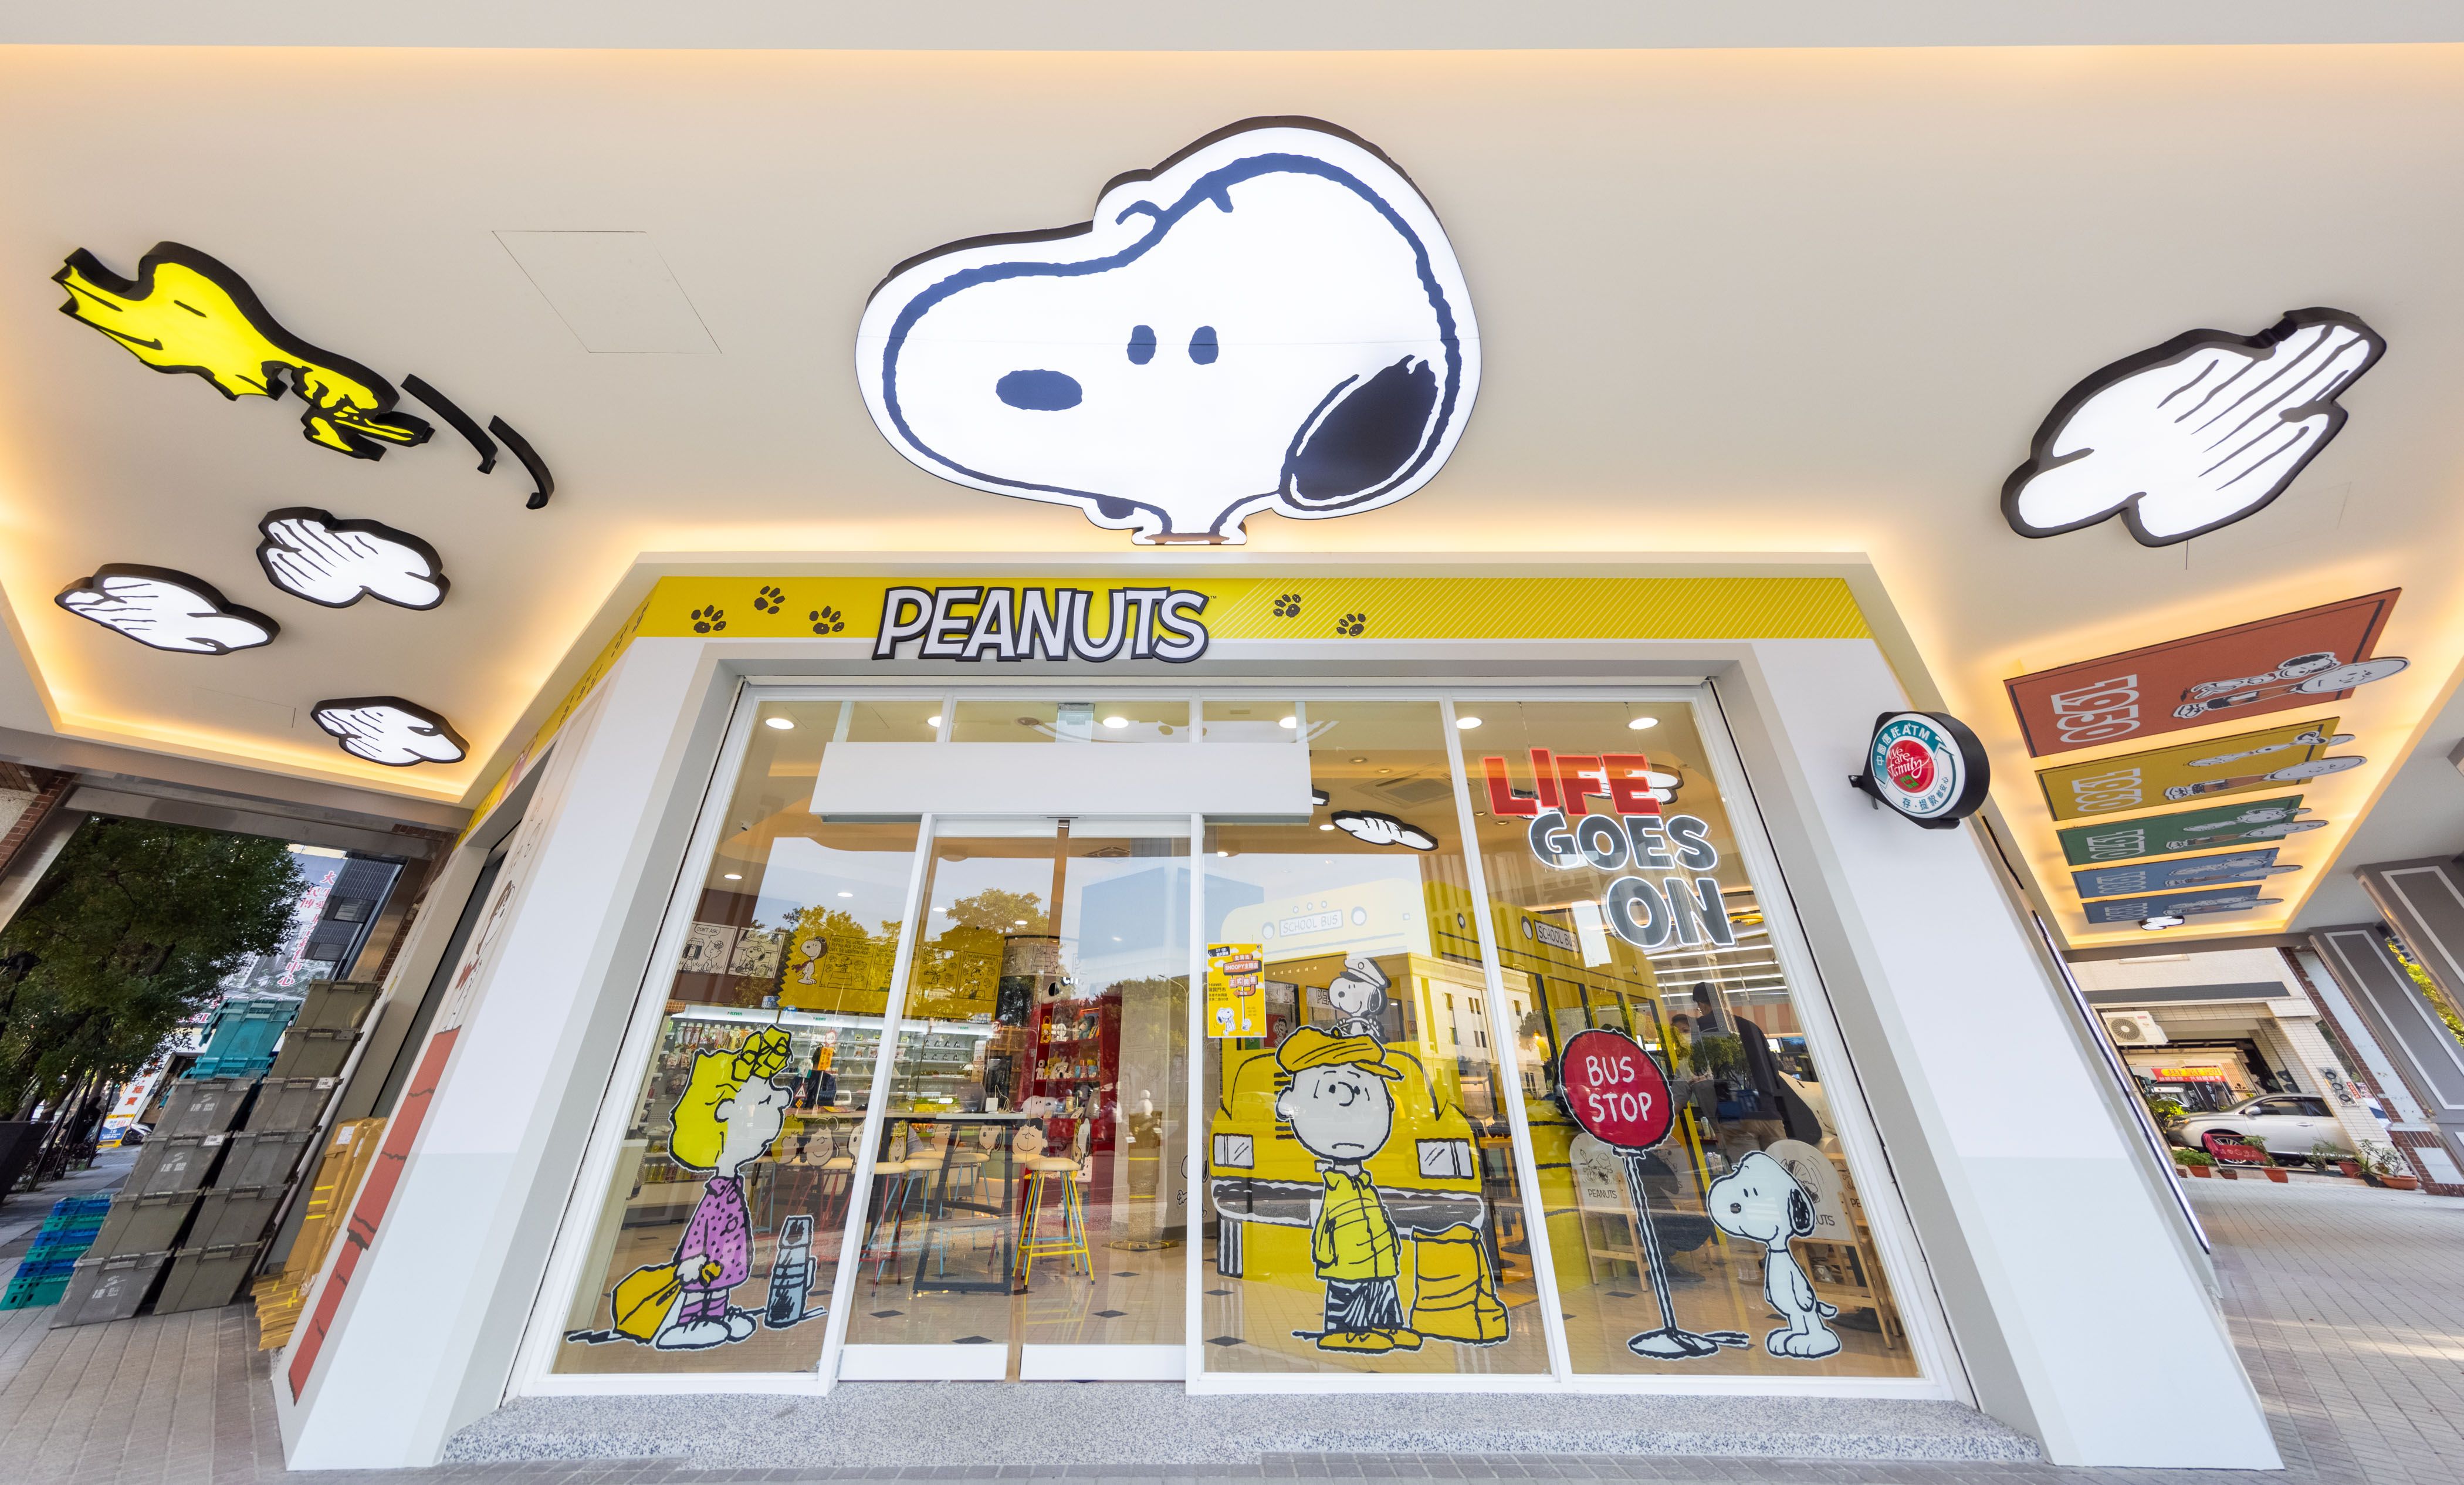 7 11 X Snoopy史努比主題店前進 台南 高雄 巨大化史努比 經典黃色巴士校車太可愛